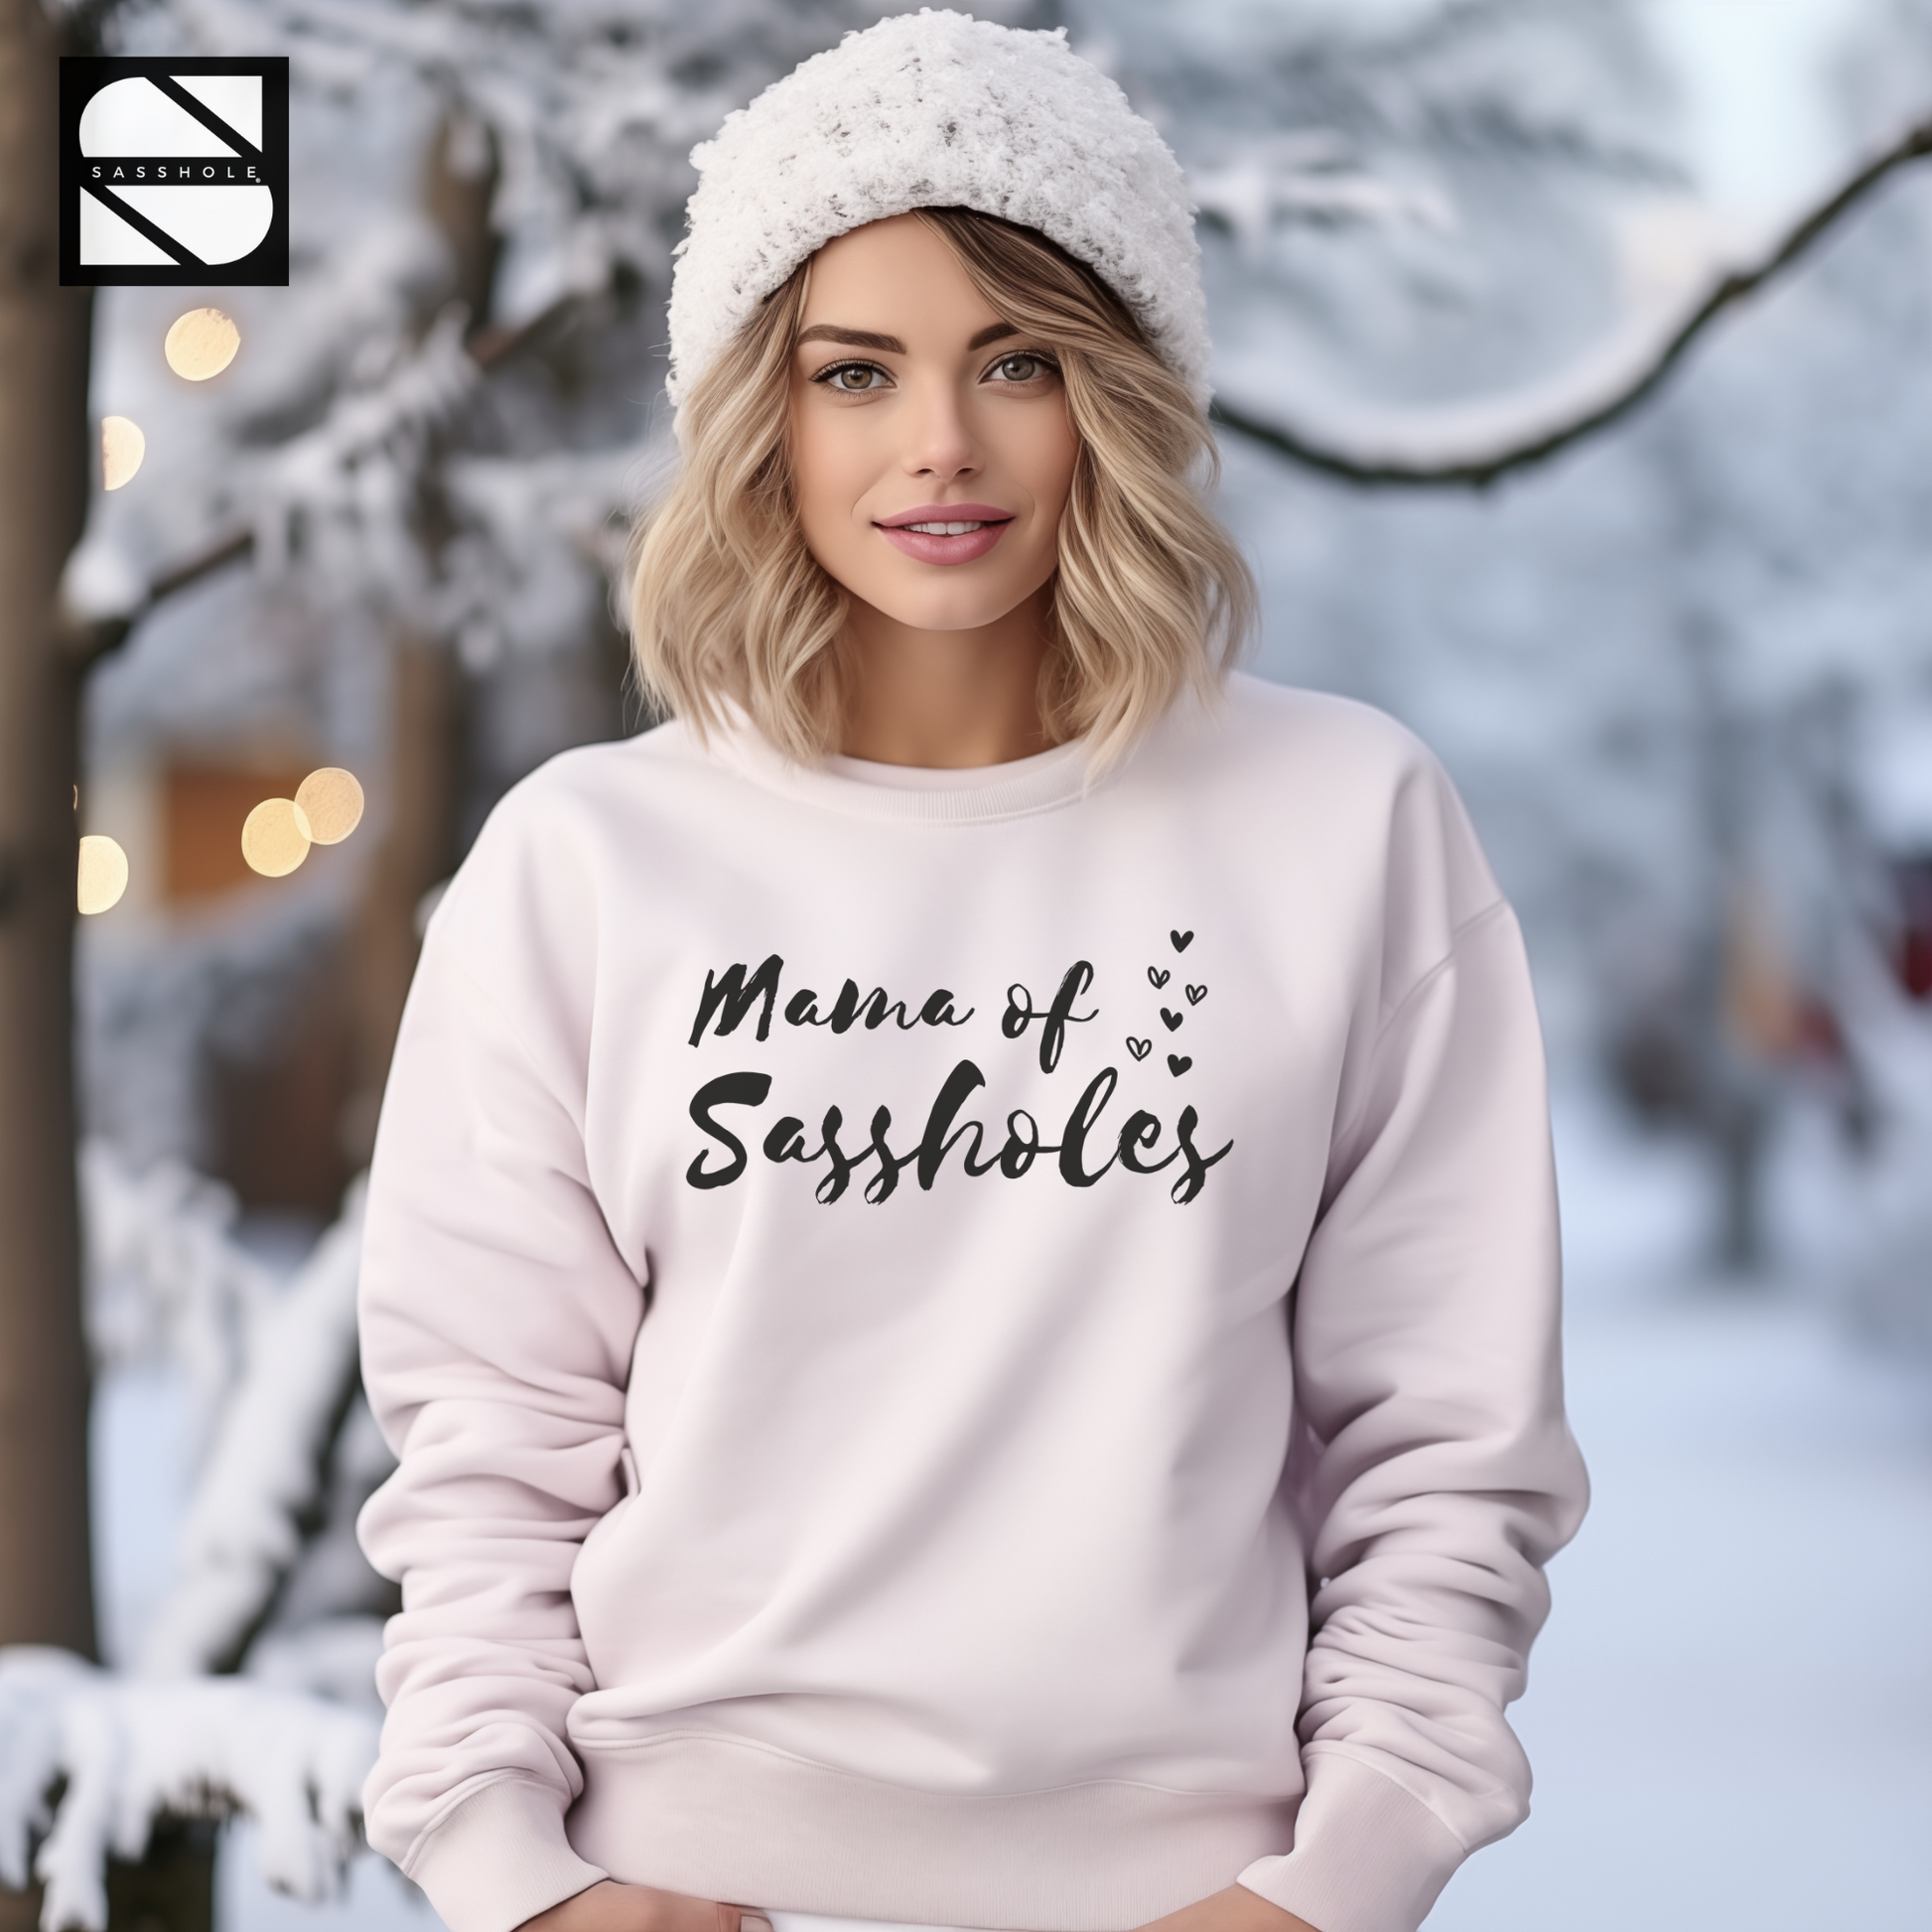 women's funny white sweatshirt